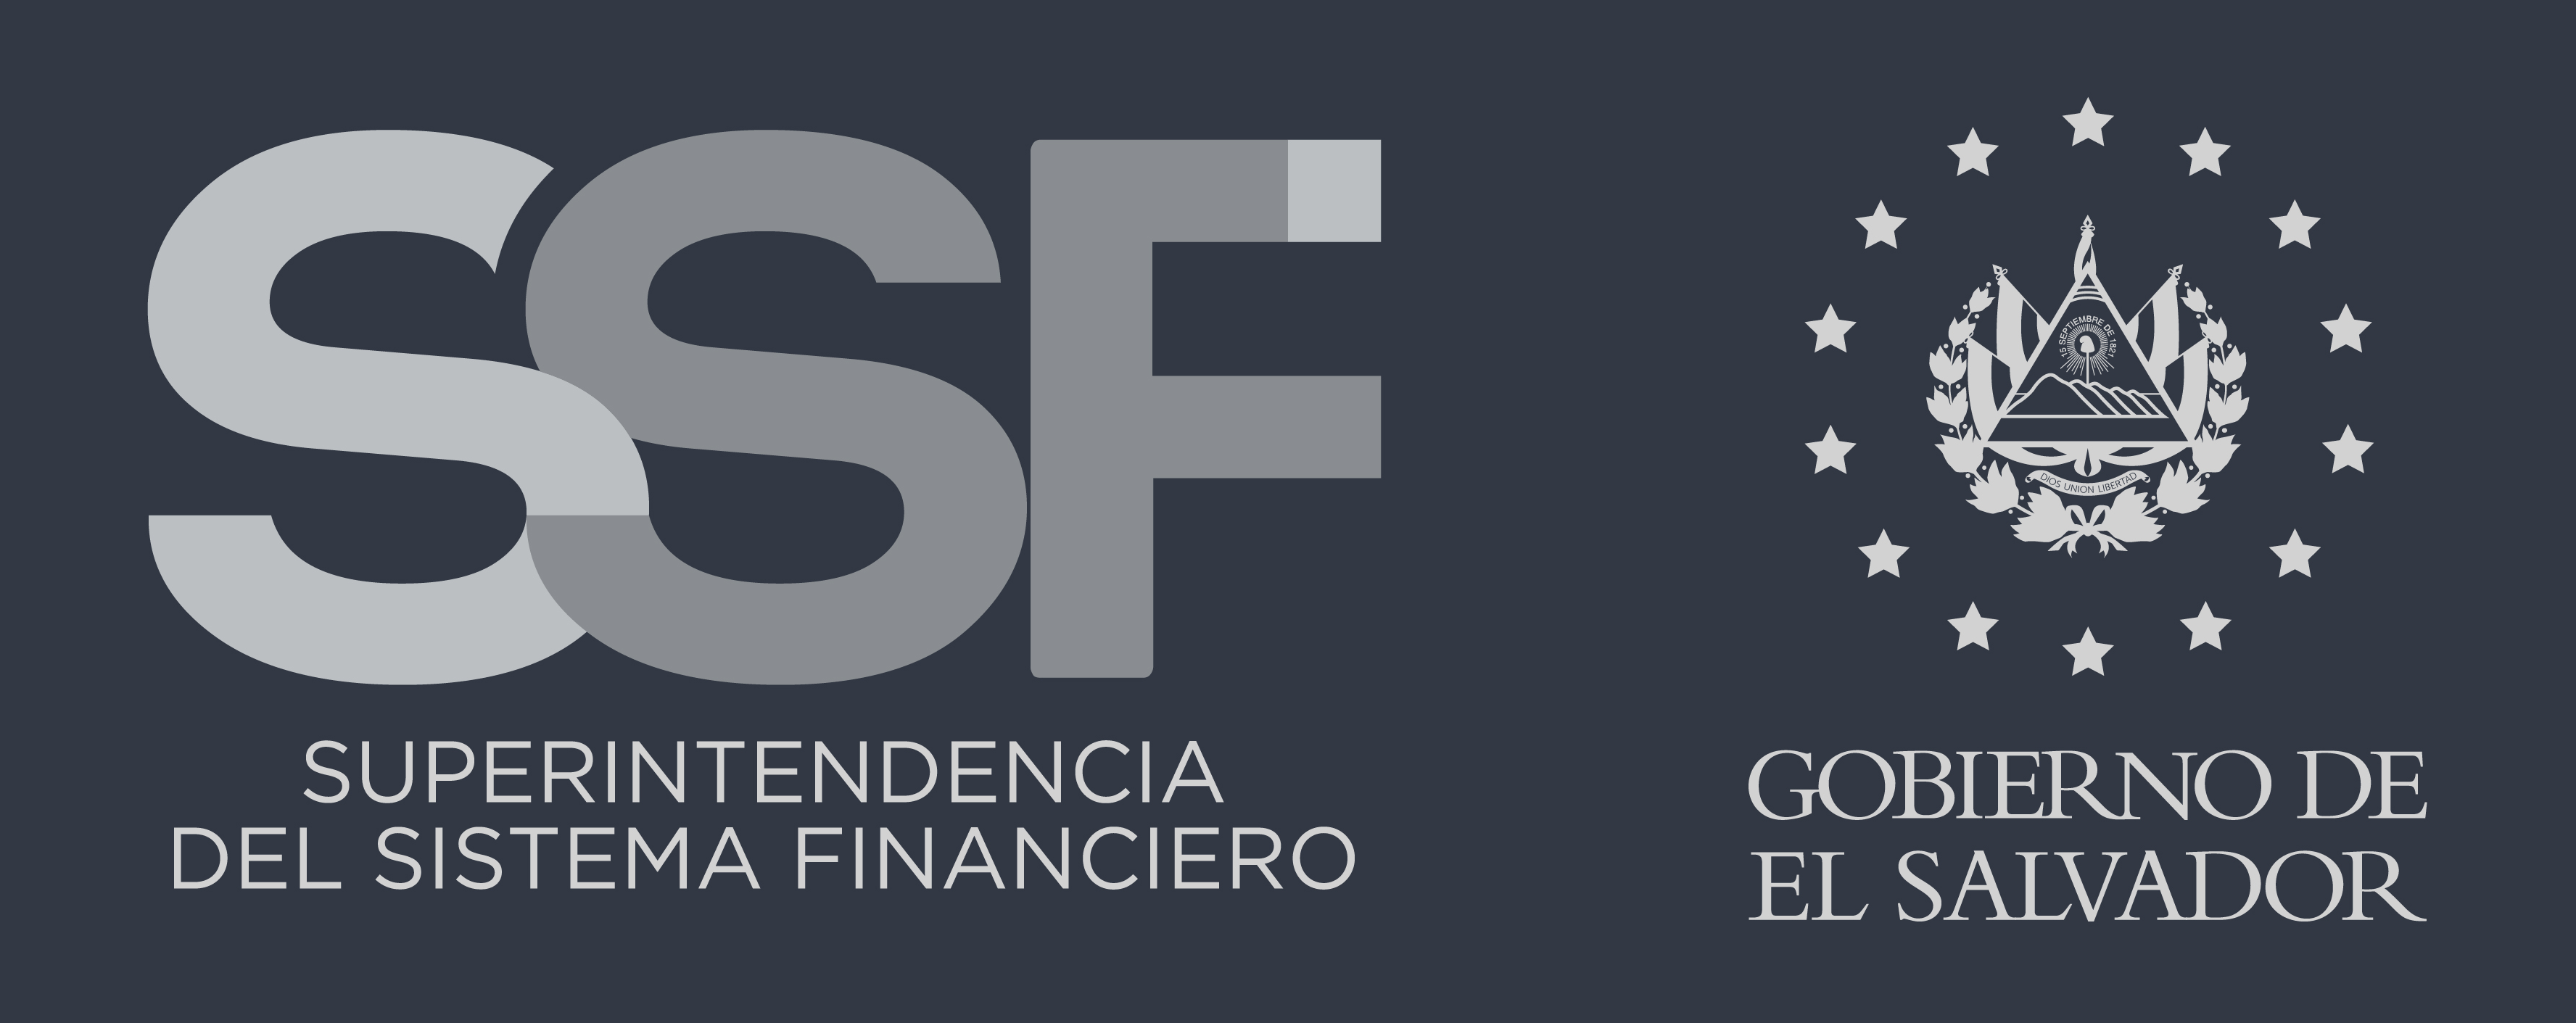 logo SSF